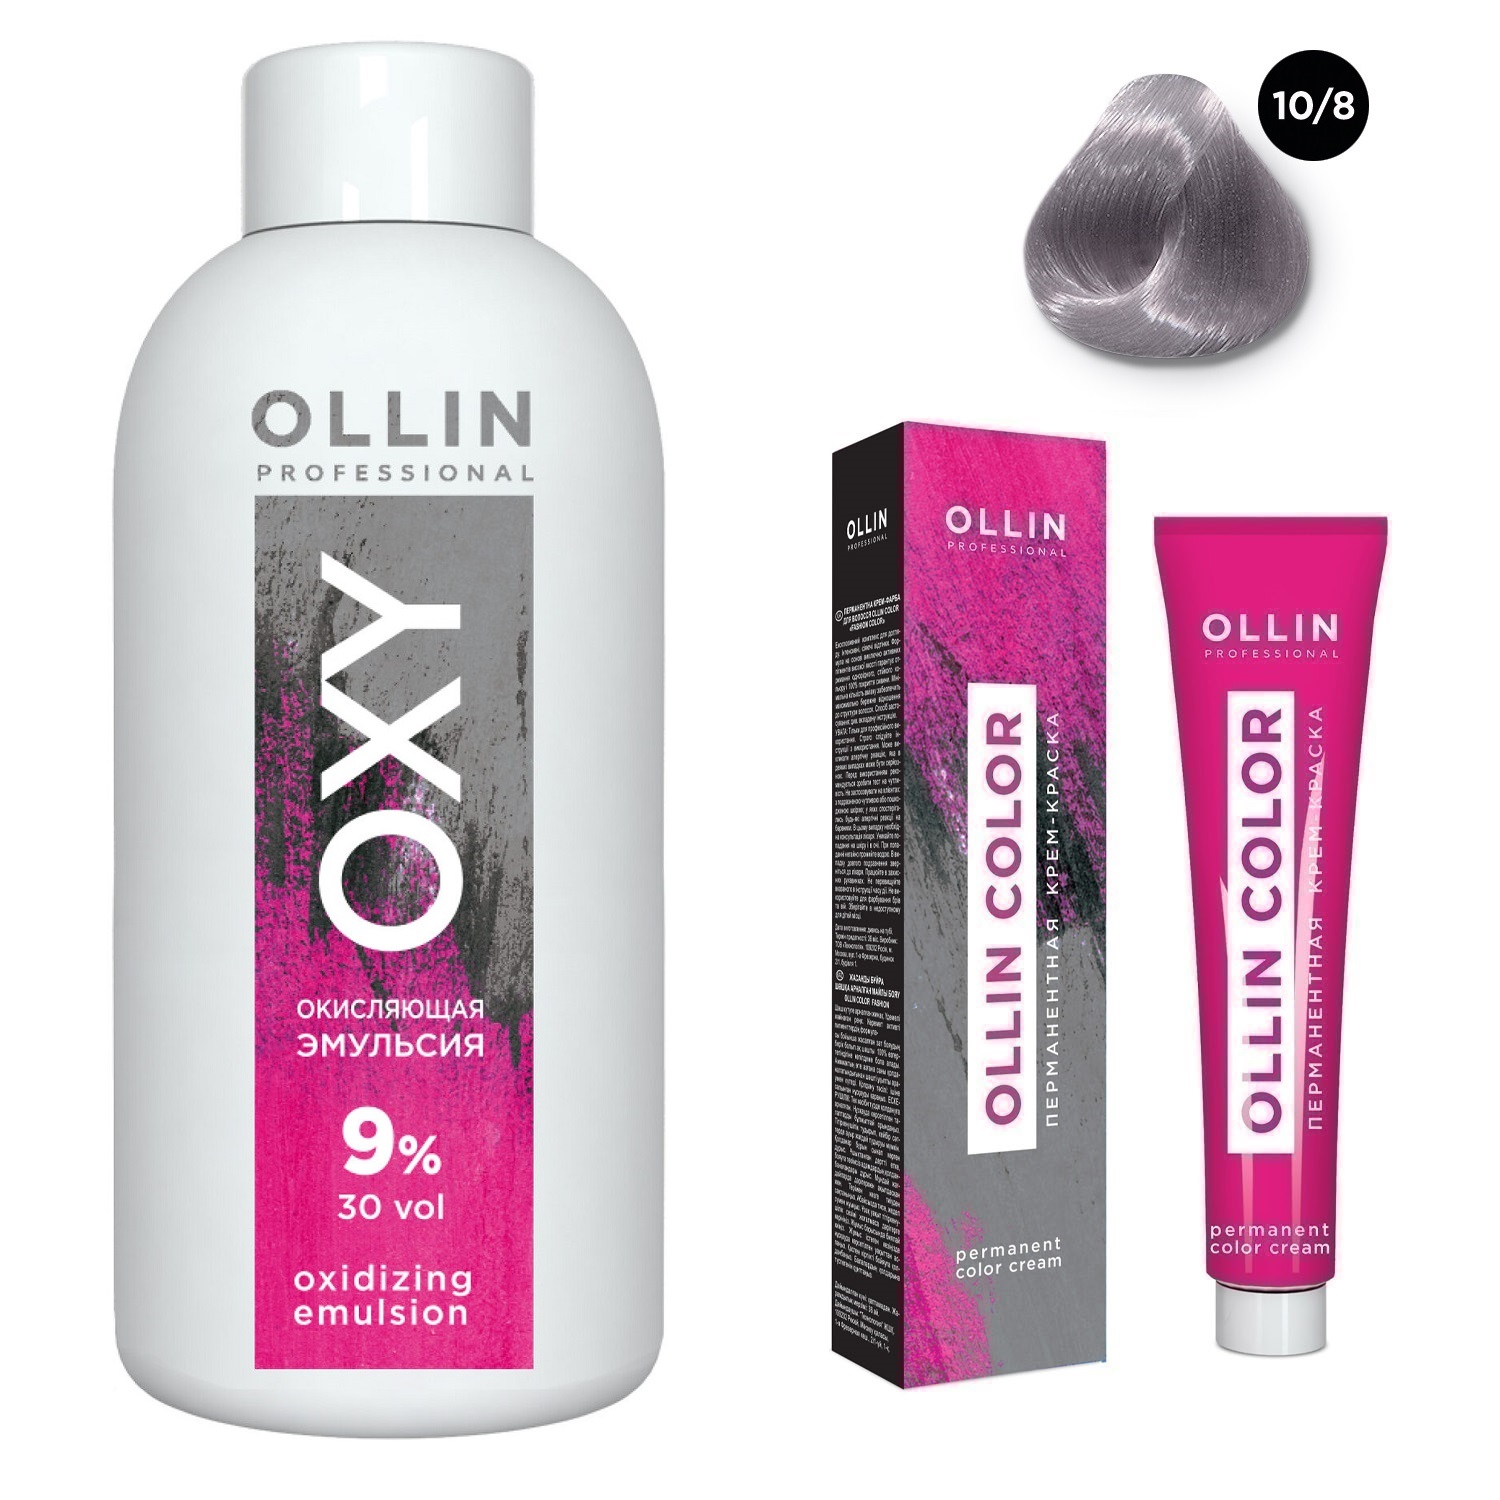 Ollin Professional Набор Перманентная крем-краска для волос Ollin Color оттенок 10/8 светлый блондин жемчужный 100 мл + Окисляющая эмульсия Oxy 9% 150 мл (Ollin Professional, Ollin Color) цена и фото